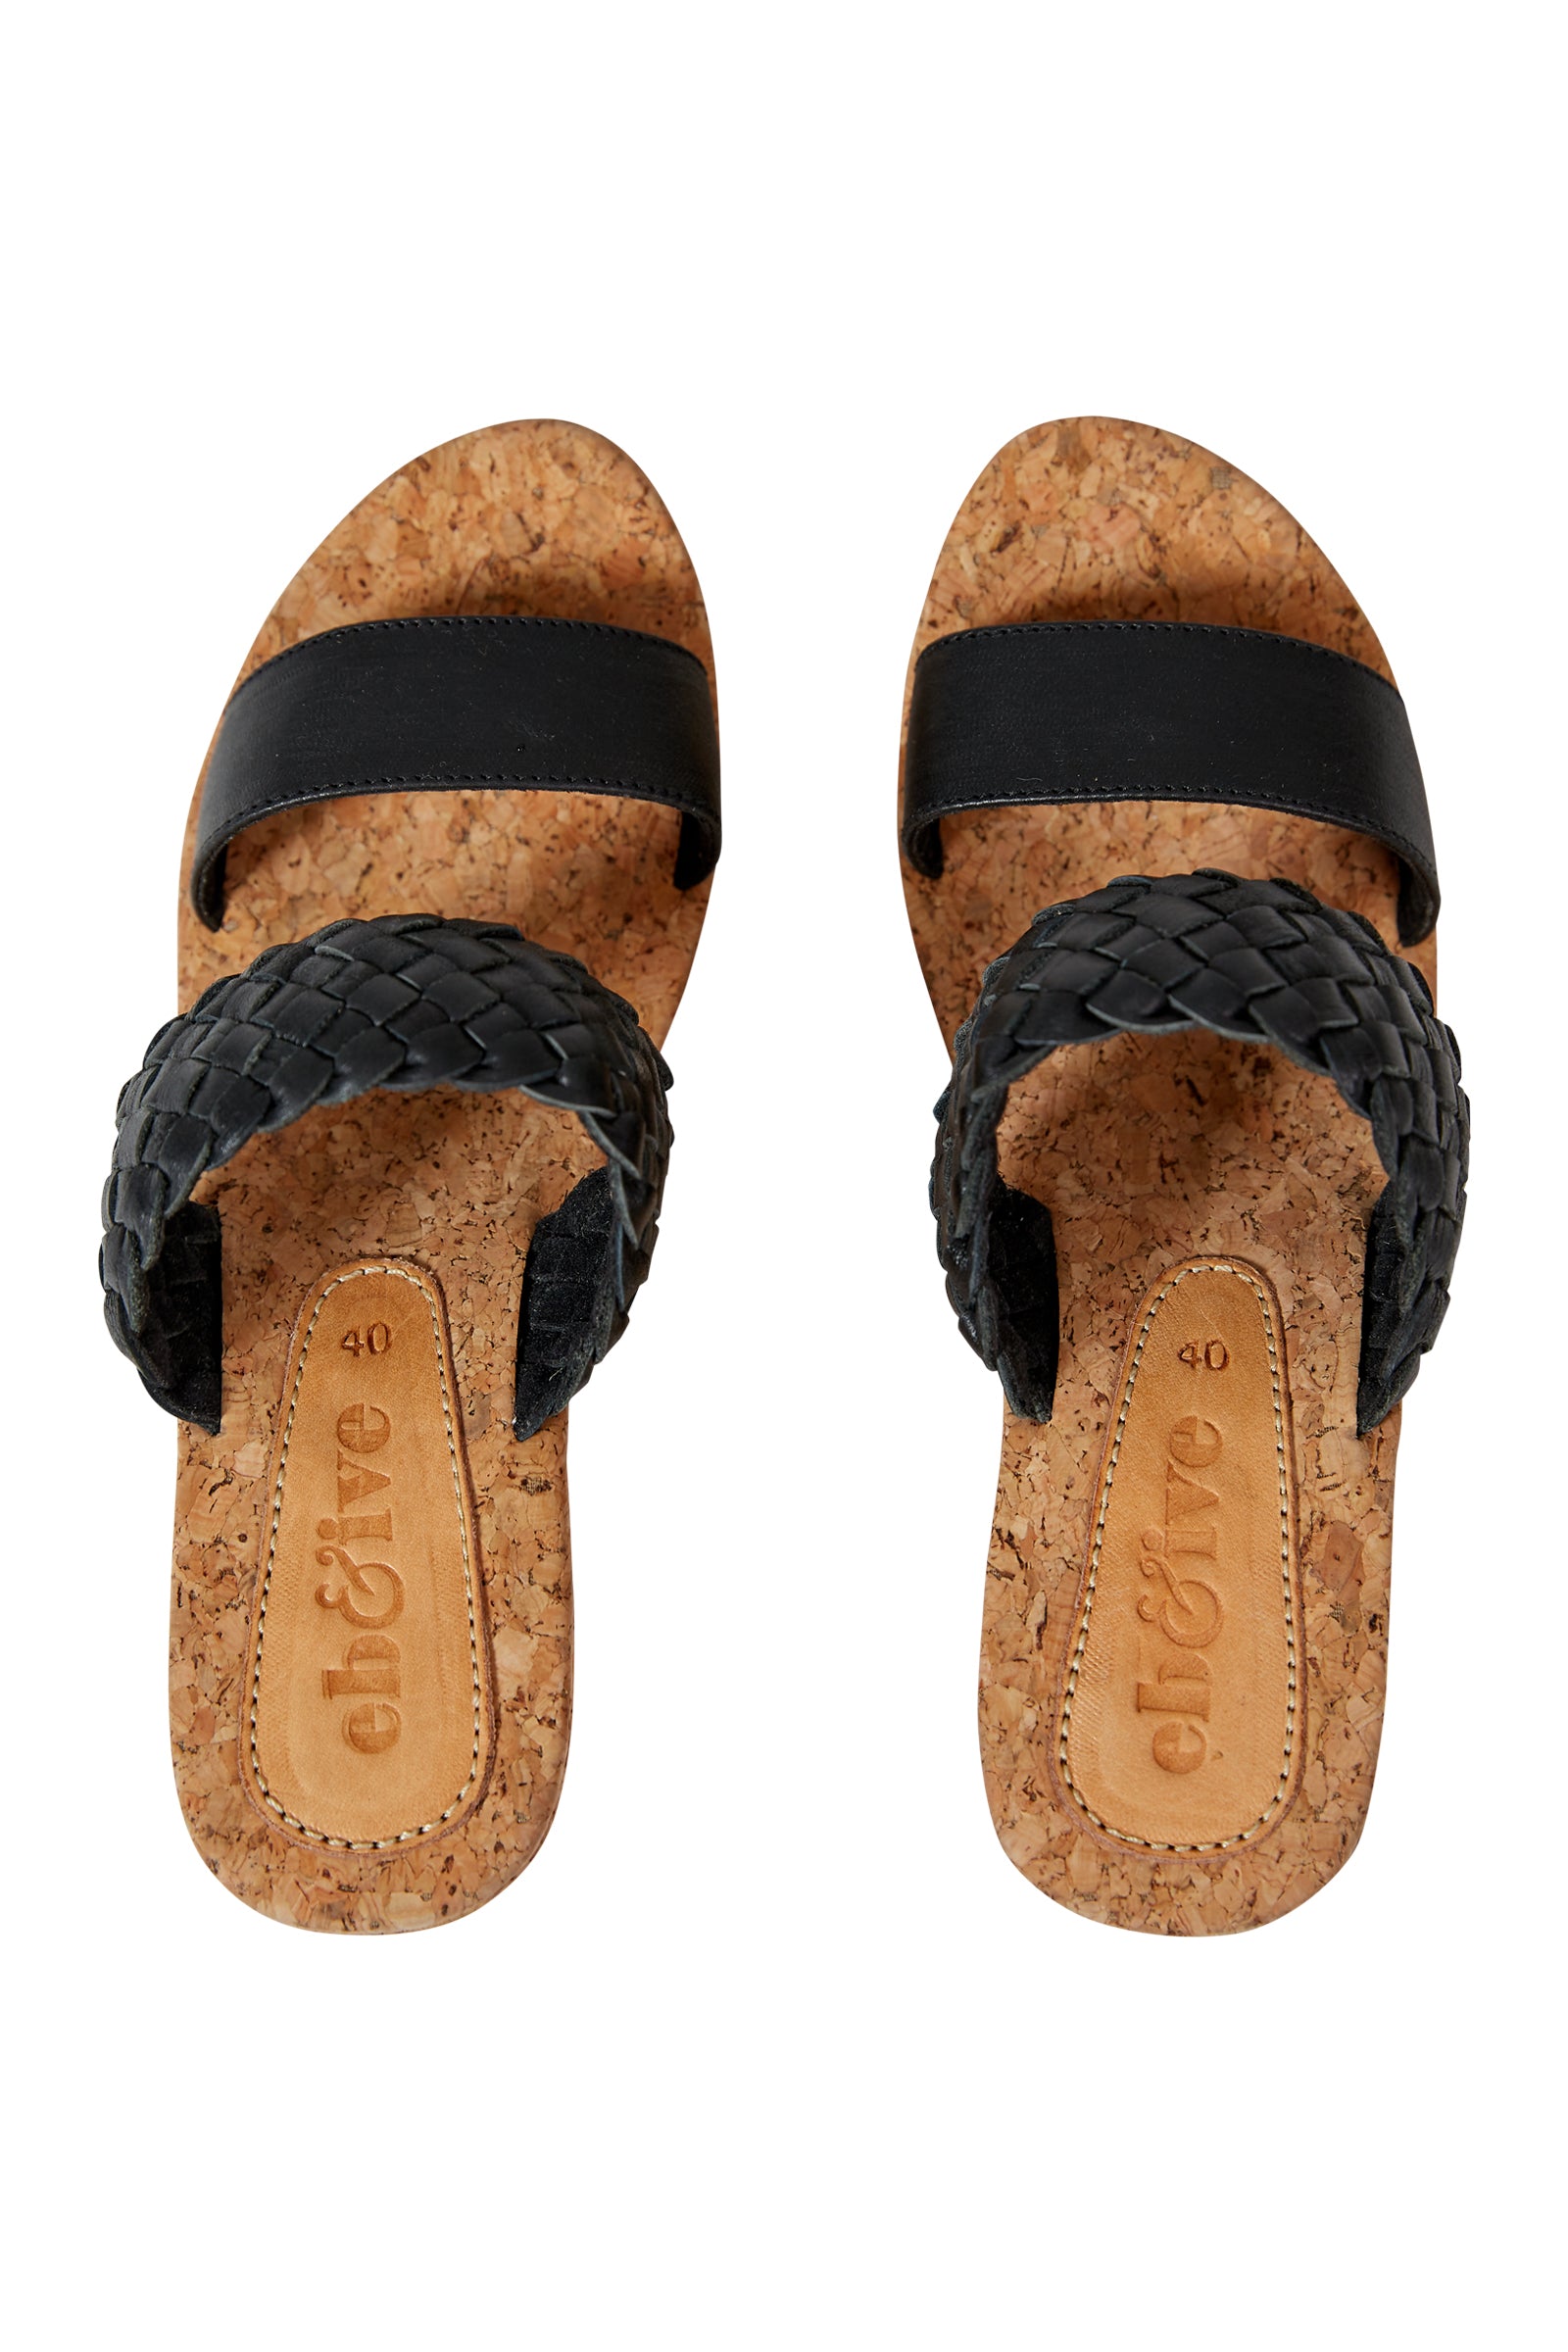 Utopia Wedge - Black - eb&ive Footwear - Sandals